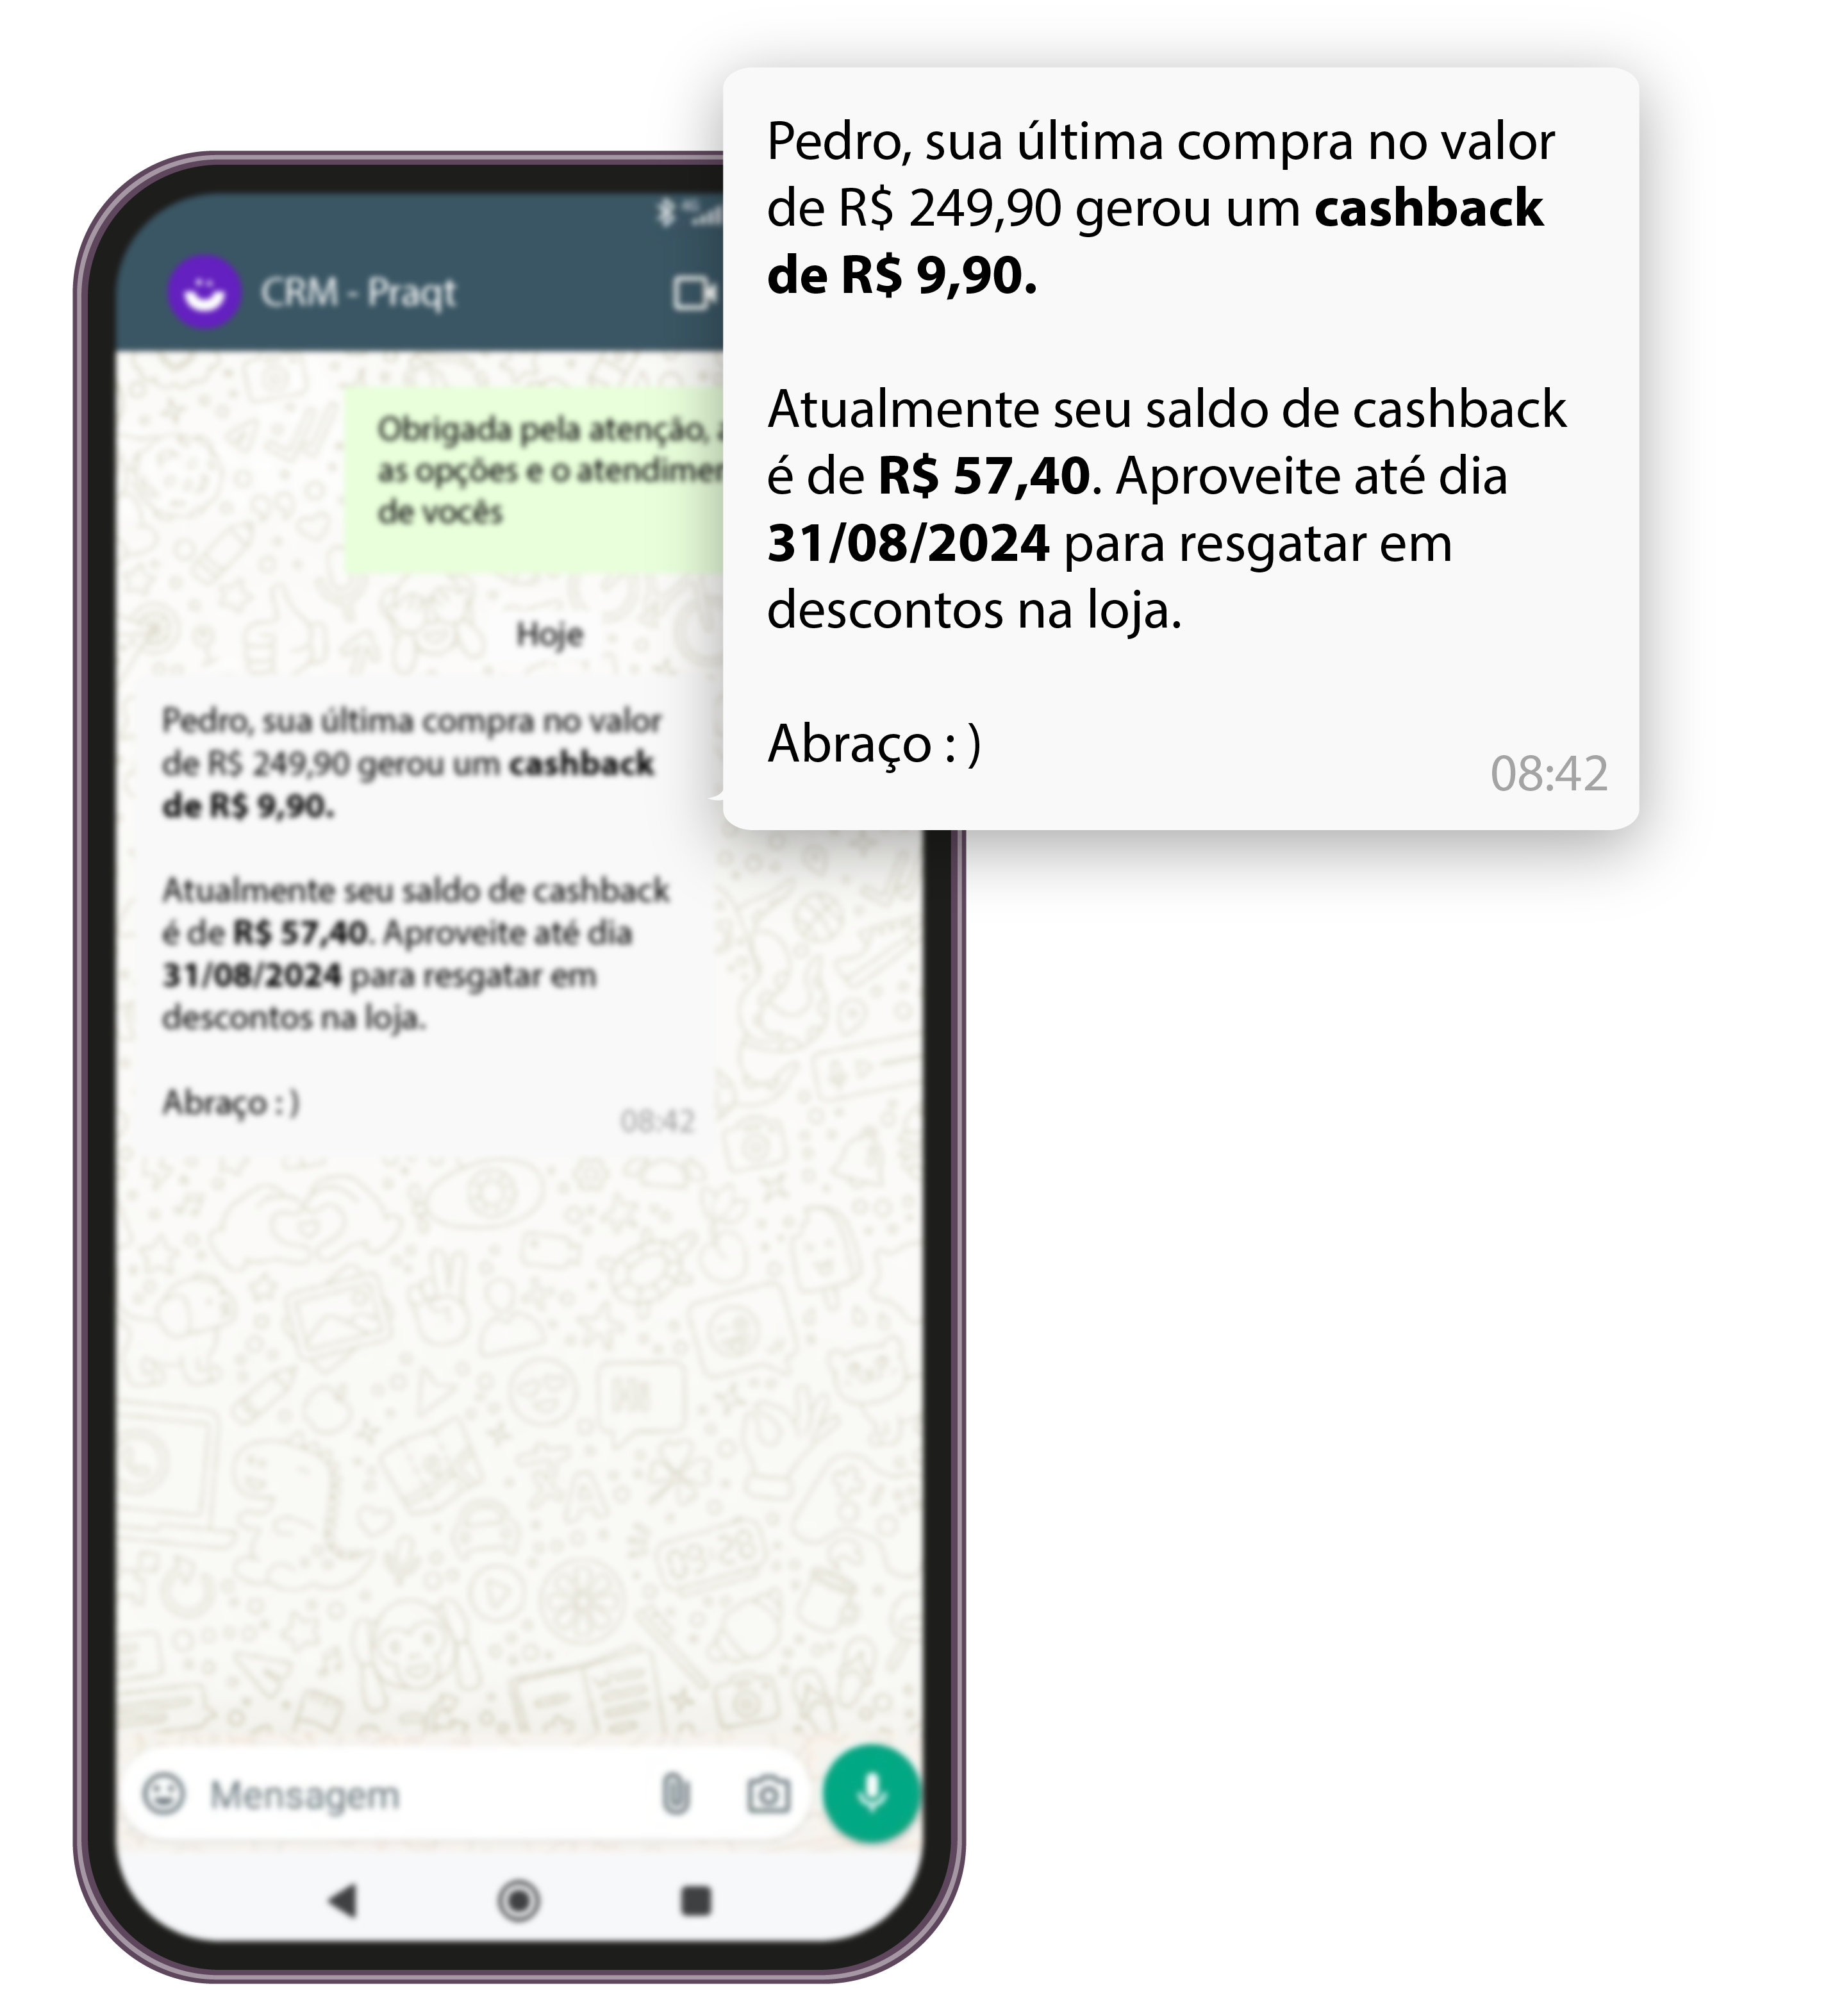 Celular mostrando mensagem automática de cashback.